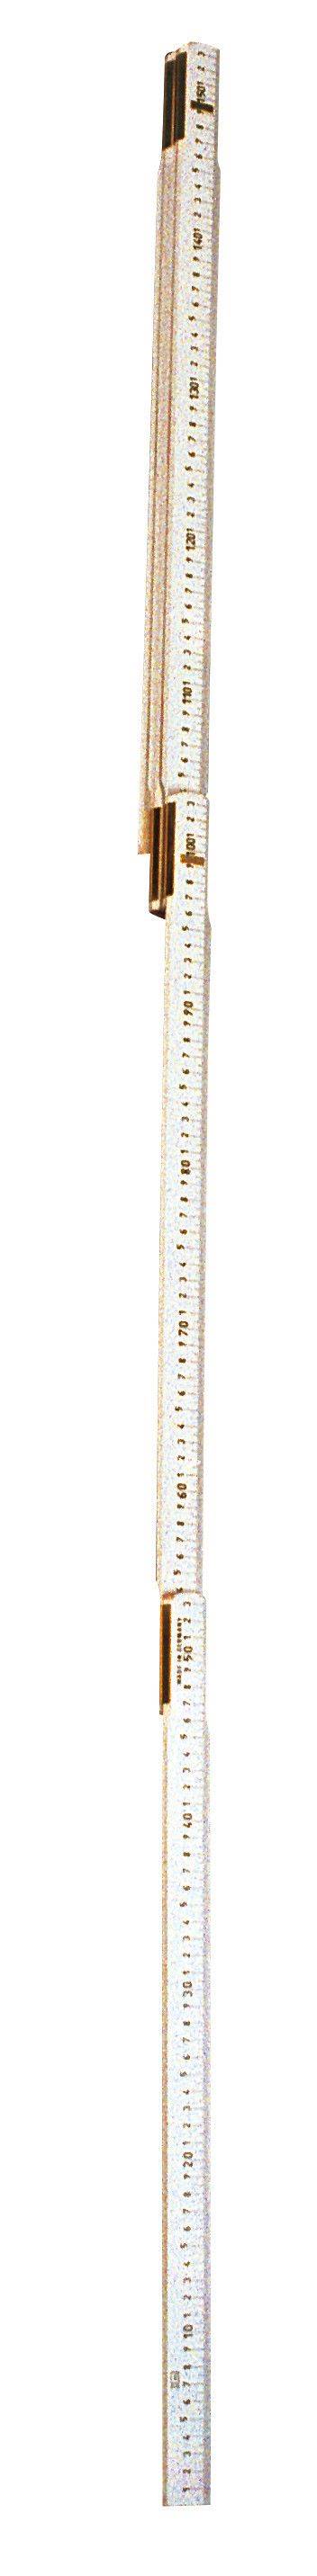 Mire pliante en bois de poche - Charnières Laiton - Long.3 m - Eléments de 30cm